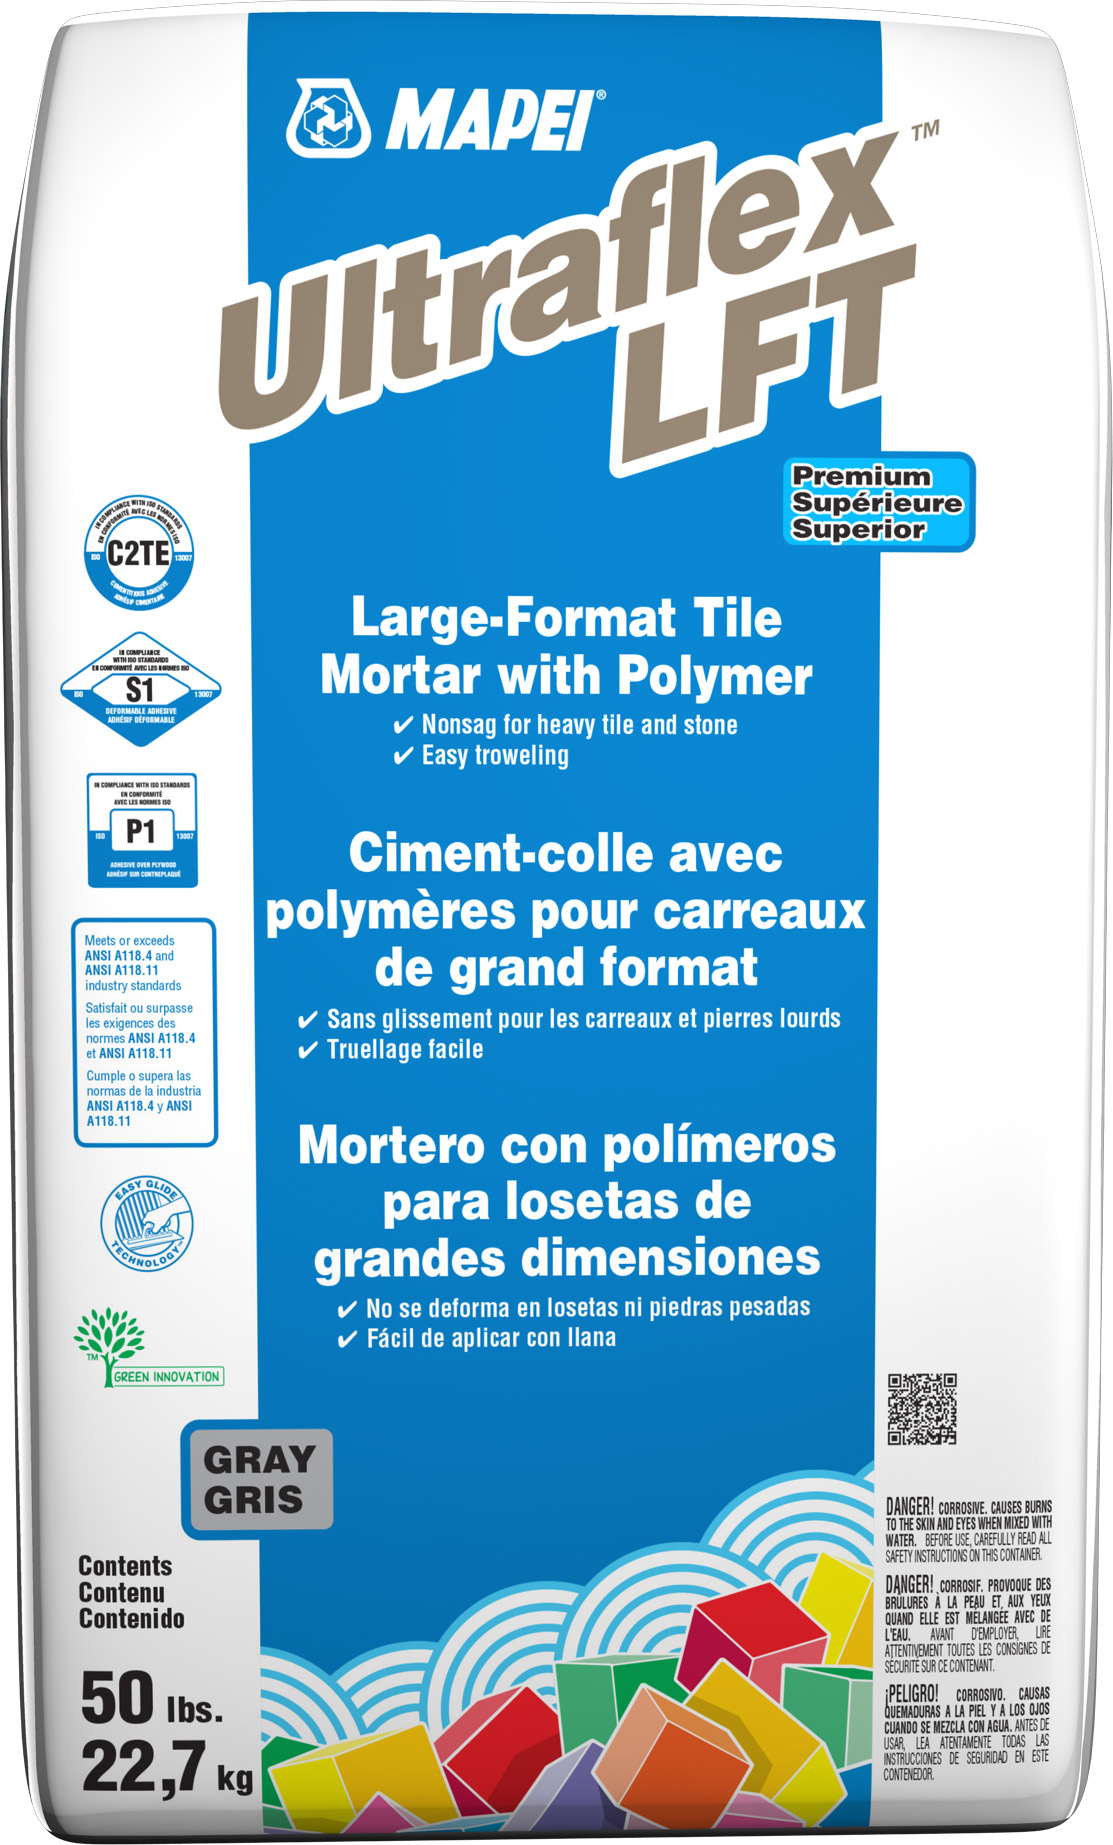 Ultraflex LFT Ciment-colle pour carreaux lourds de grand format, Gris - 50 lb